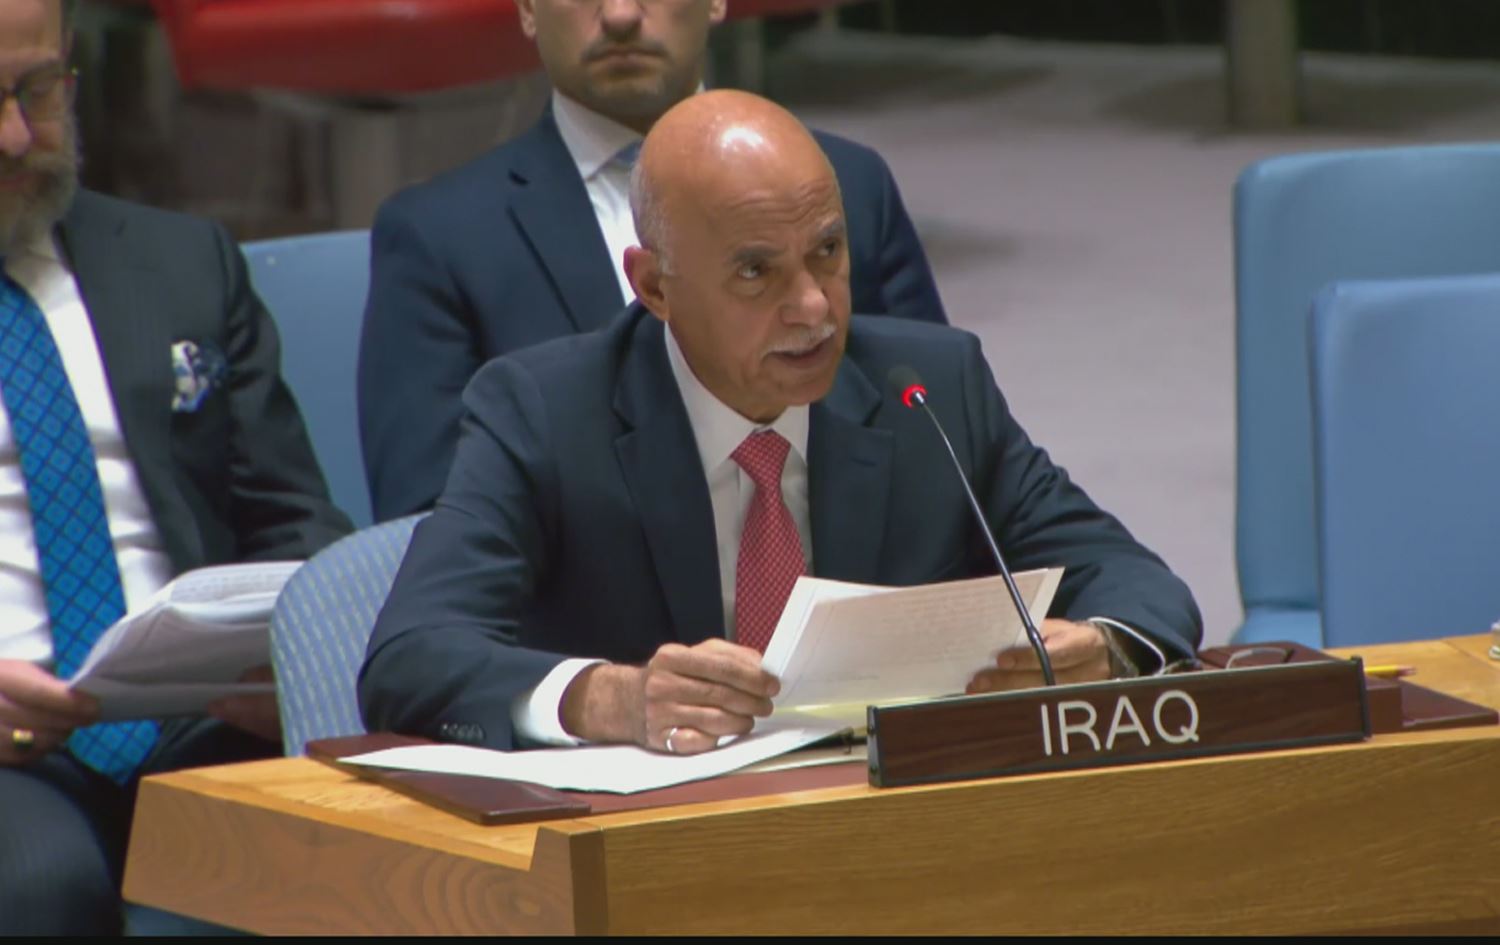 كلمة حكومة الإطار في مجلس الأمن الدولي: العراق بعد 2003 رافع “الراية البيضاء”